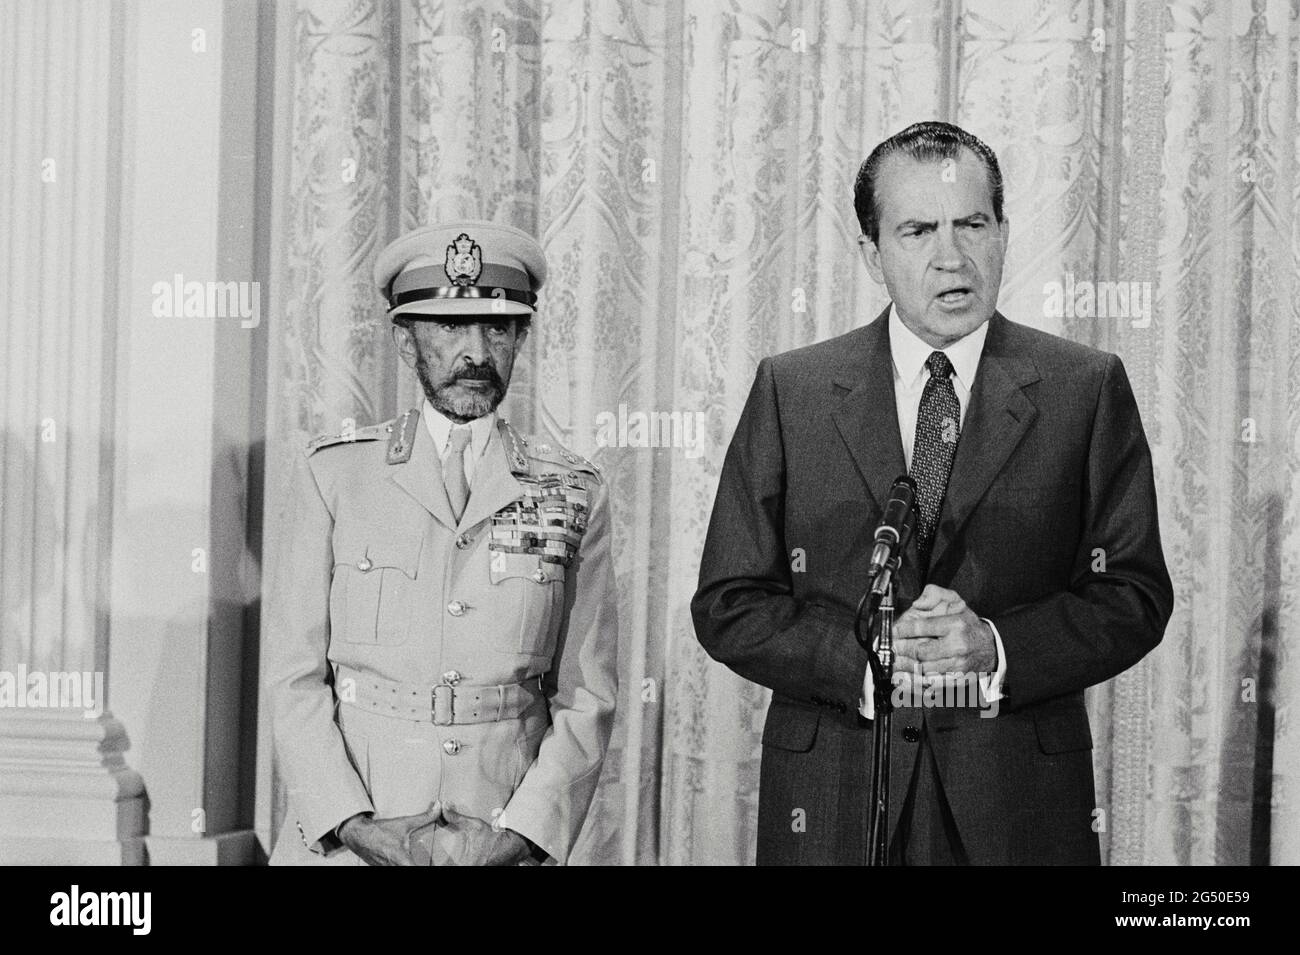 Photo d'époque de l'empereur d'Éthiopie Haile Selassie et du président américain Richard Nixon. ÉTATS-UNIS. 1er juillet 1969 Banque D'Images